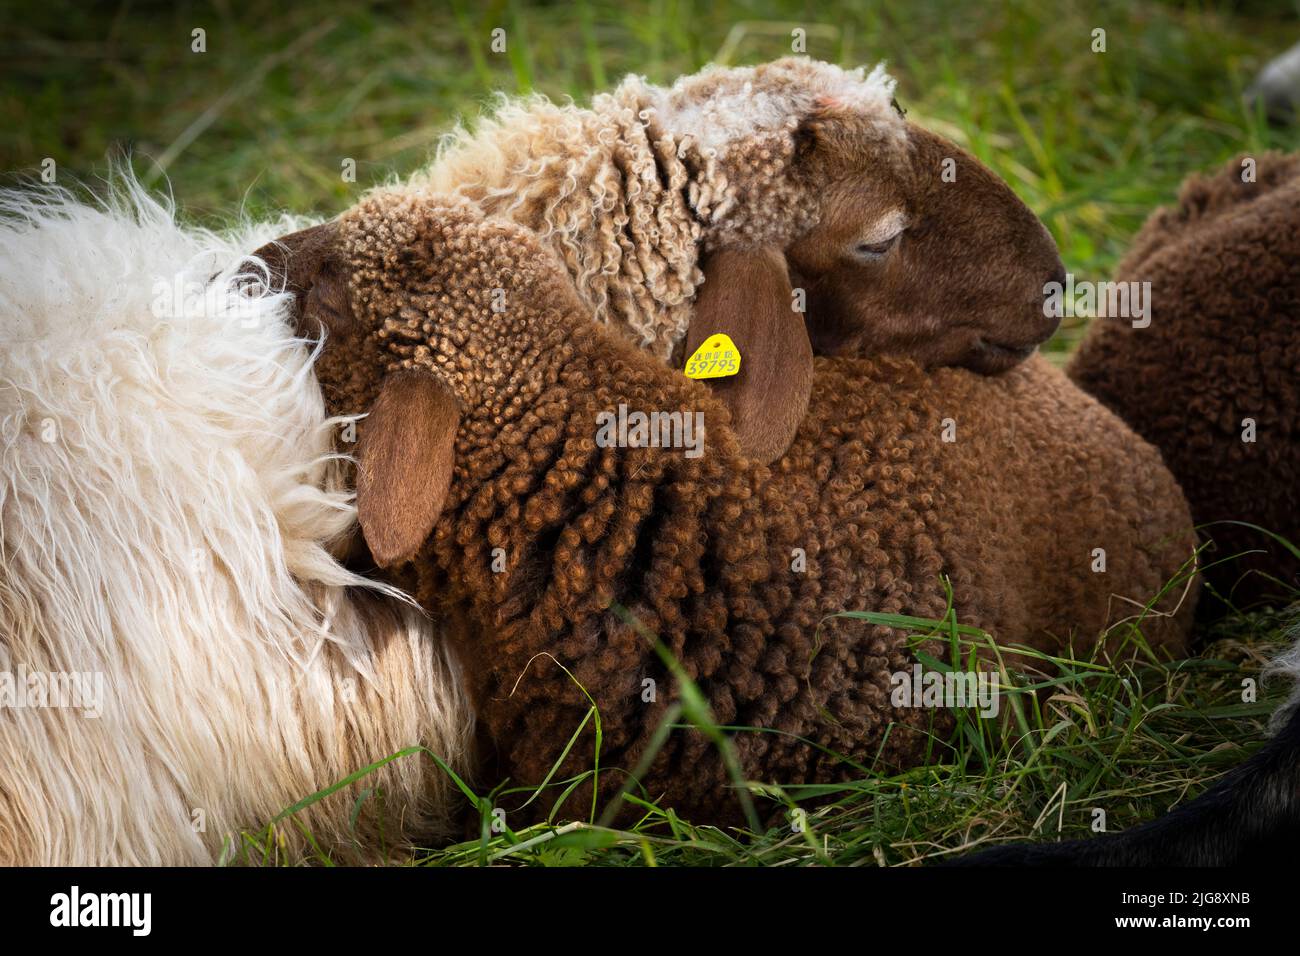 Ewe with sleeping lamb Stock Photo